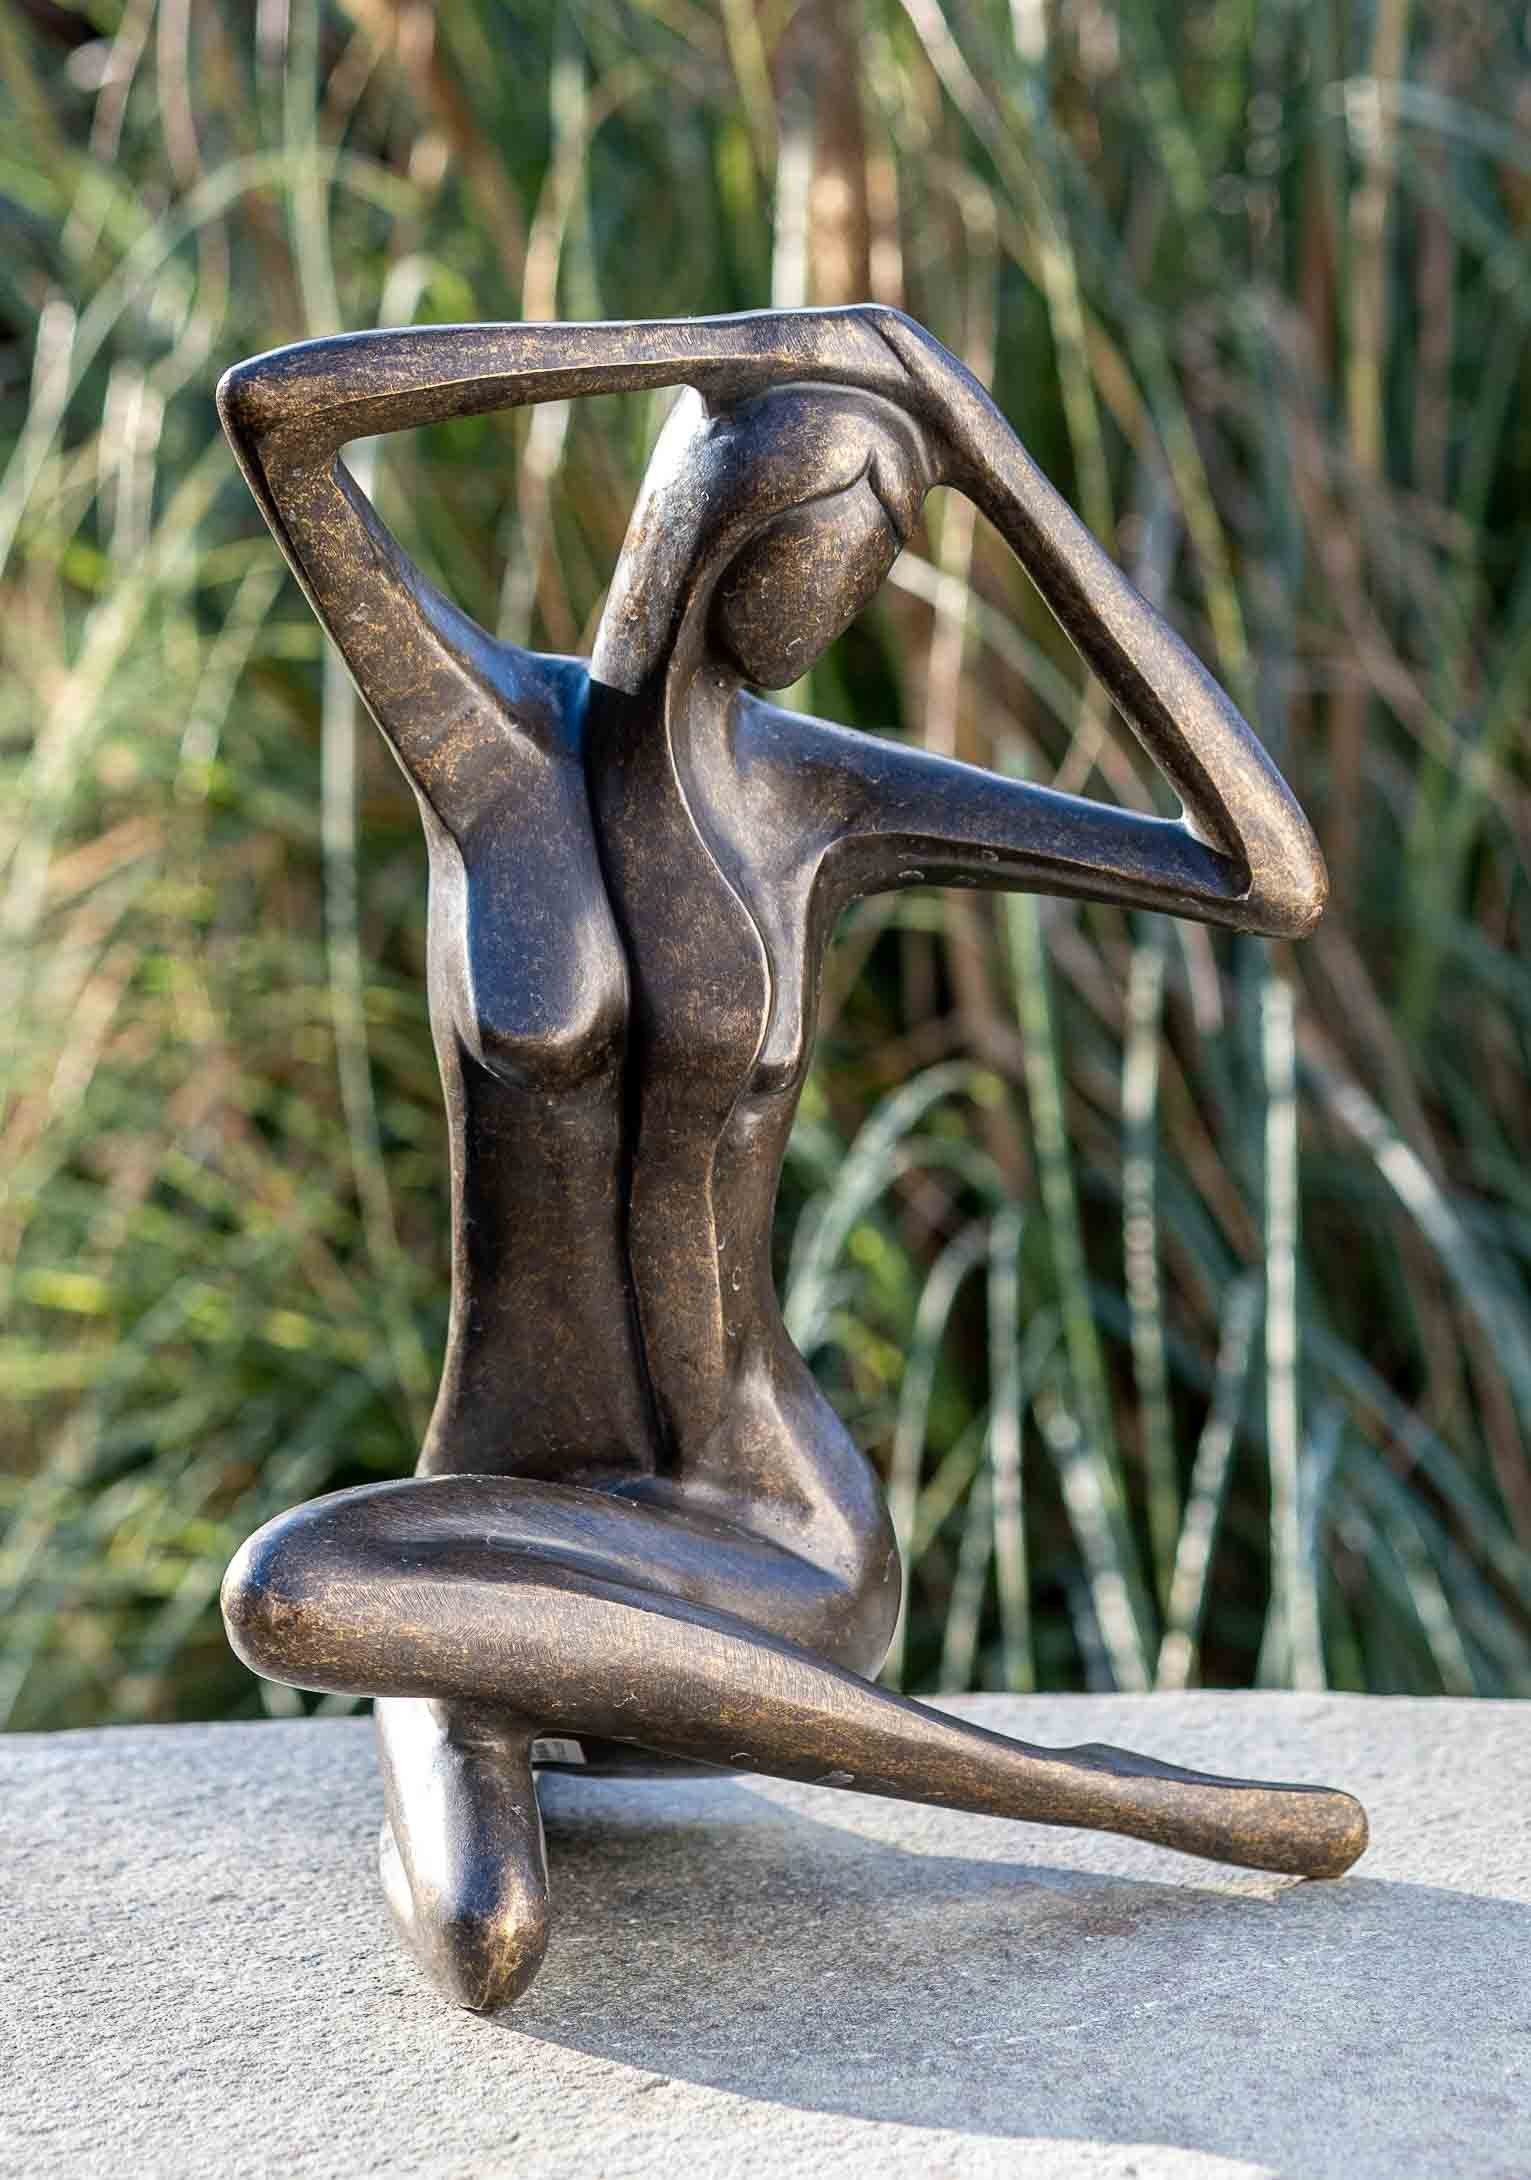 – Gartenfigur Sitzende Langlebig gegen IDYL Hand gegossen IDYL sehr witterungsbeständig Frost, Bronze-Skulptur und – und robust Bronze UV-Strahlung. Modelle von in in werden Bronze Frau, Wachsausschmelzverfahren patiniert. Die Regen –